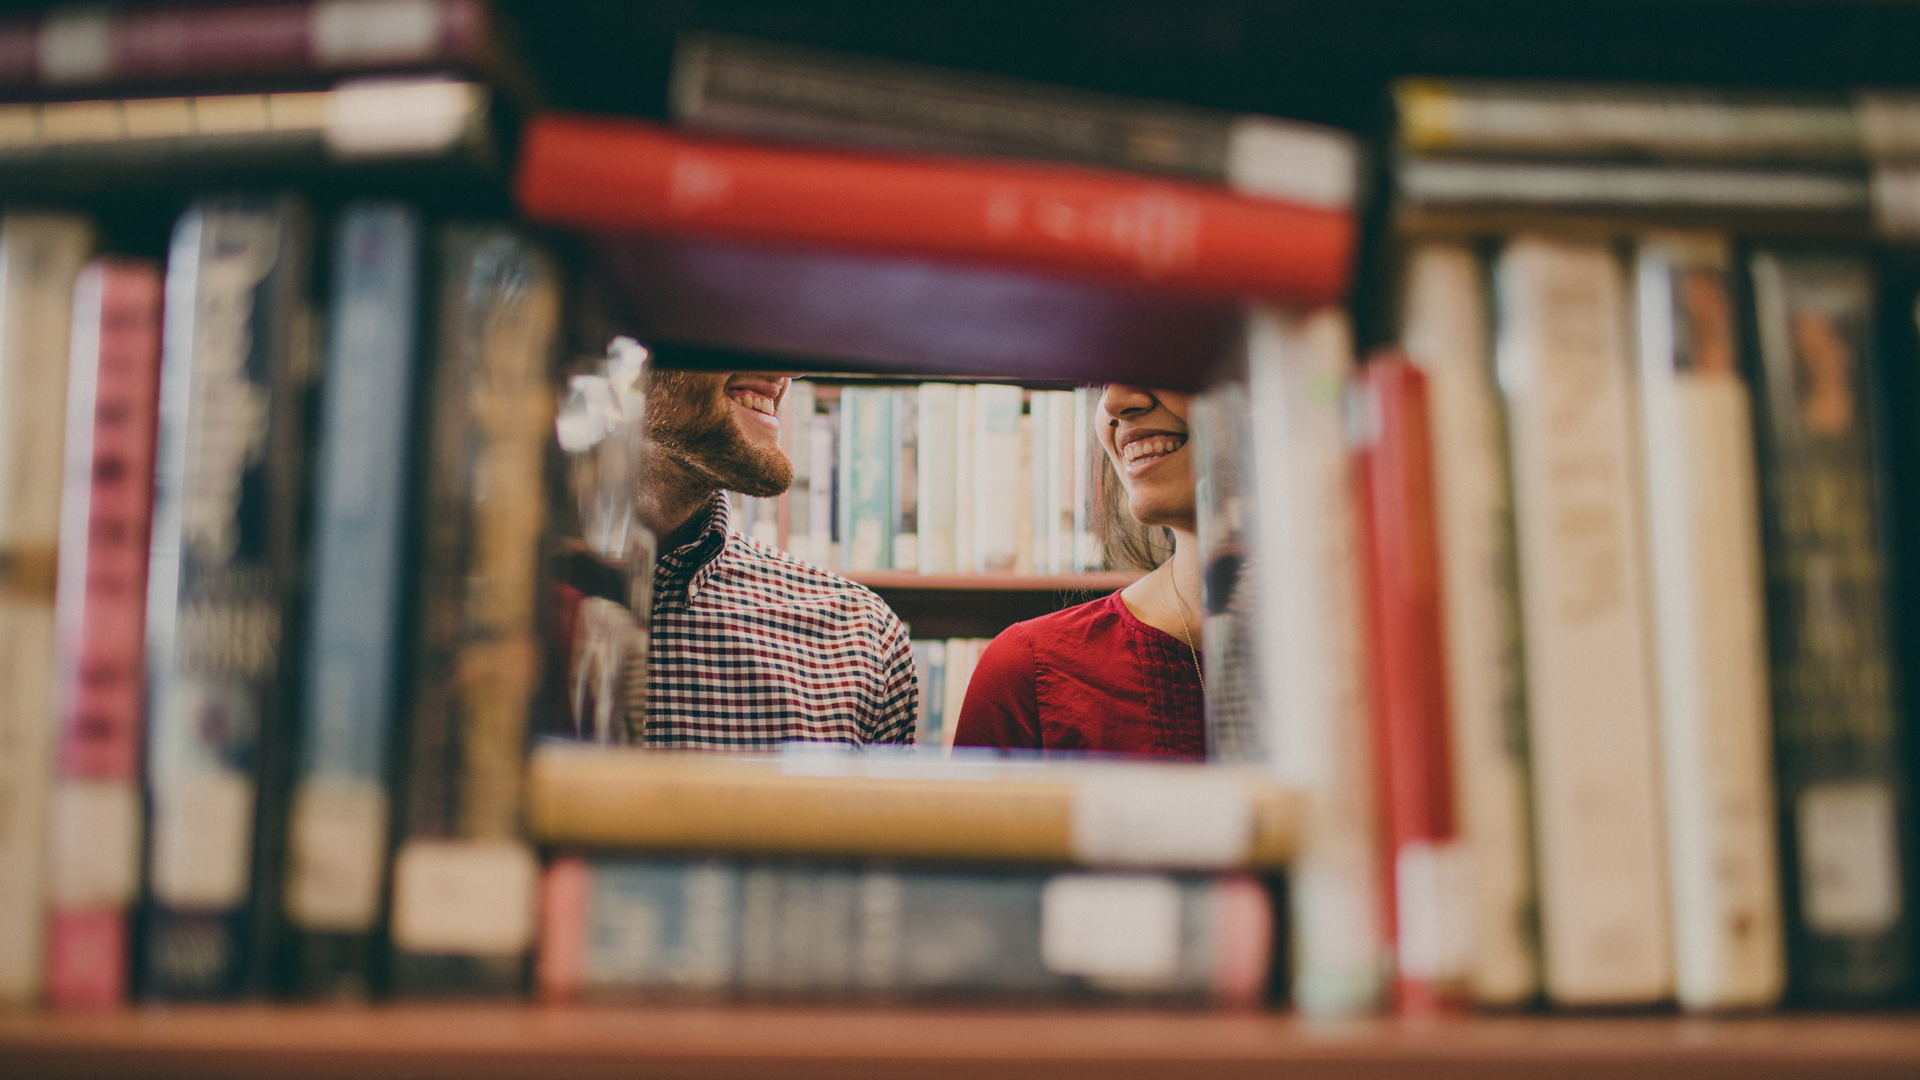 δύο άτομα κρυμμένα πίσω από μια βιβλιοθήκη